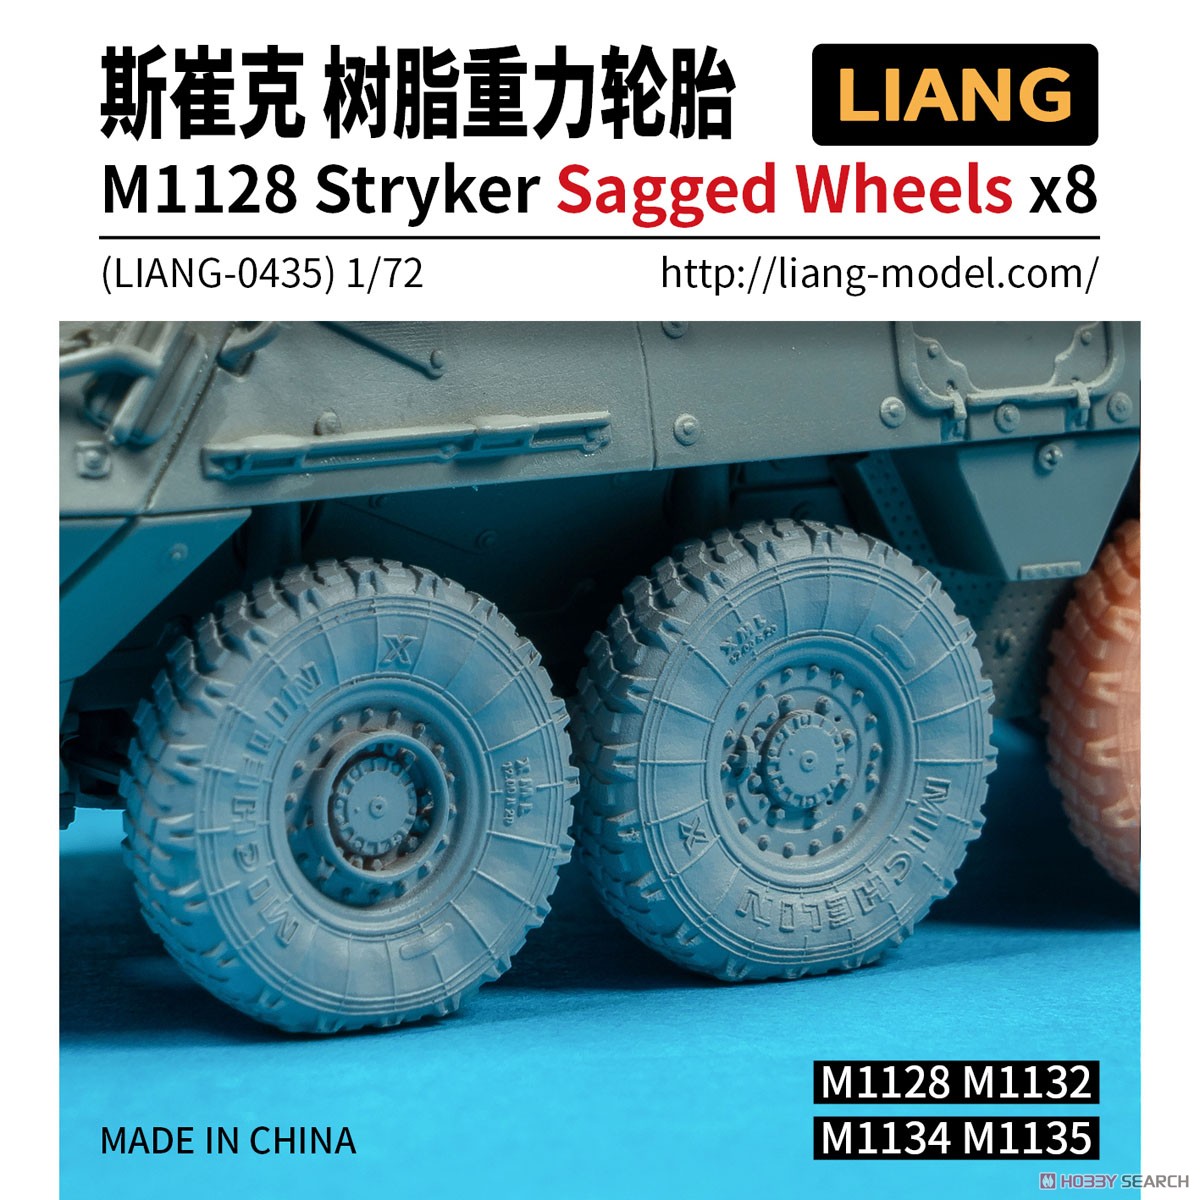 M1128 ストライカー用自重変形 タイヤセット (8本入り) (プラモデル) パッケージ1